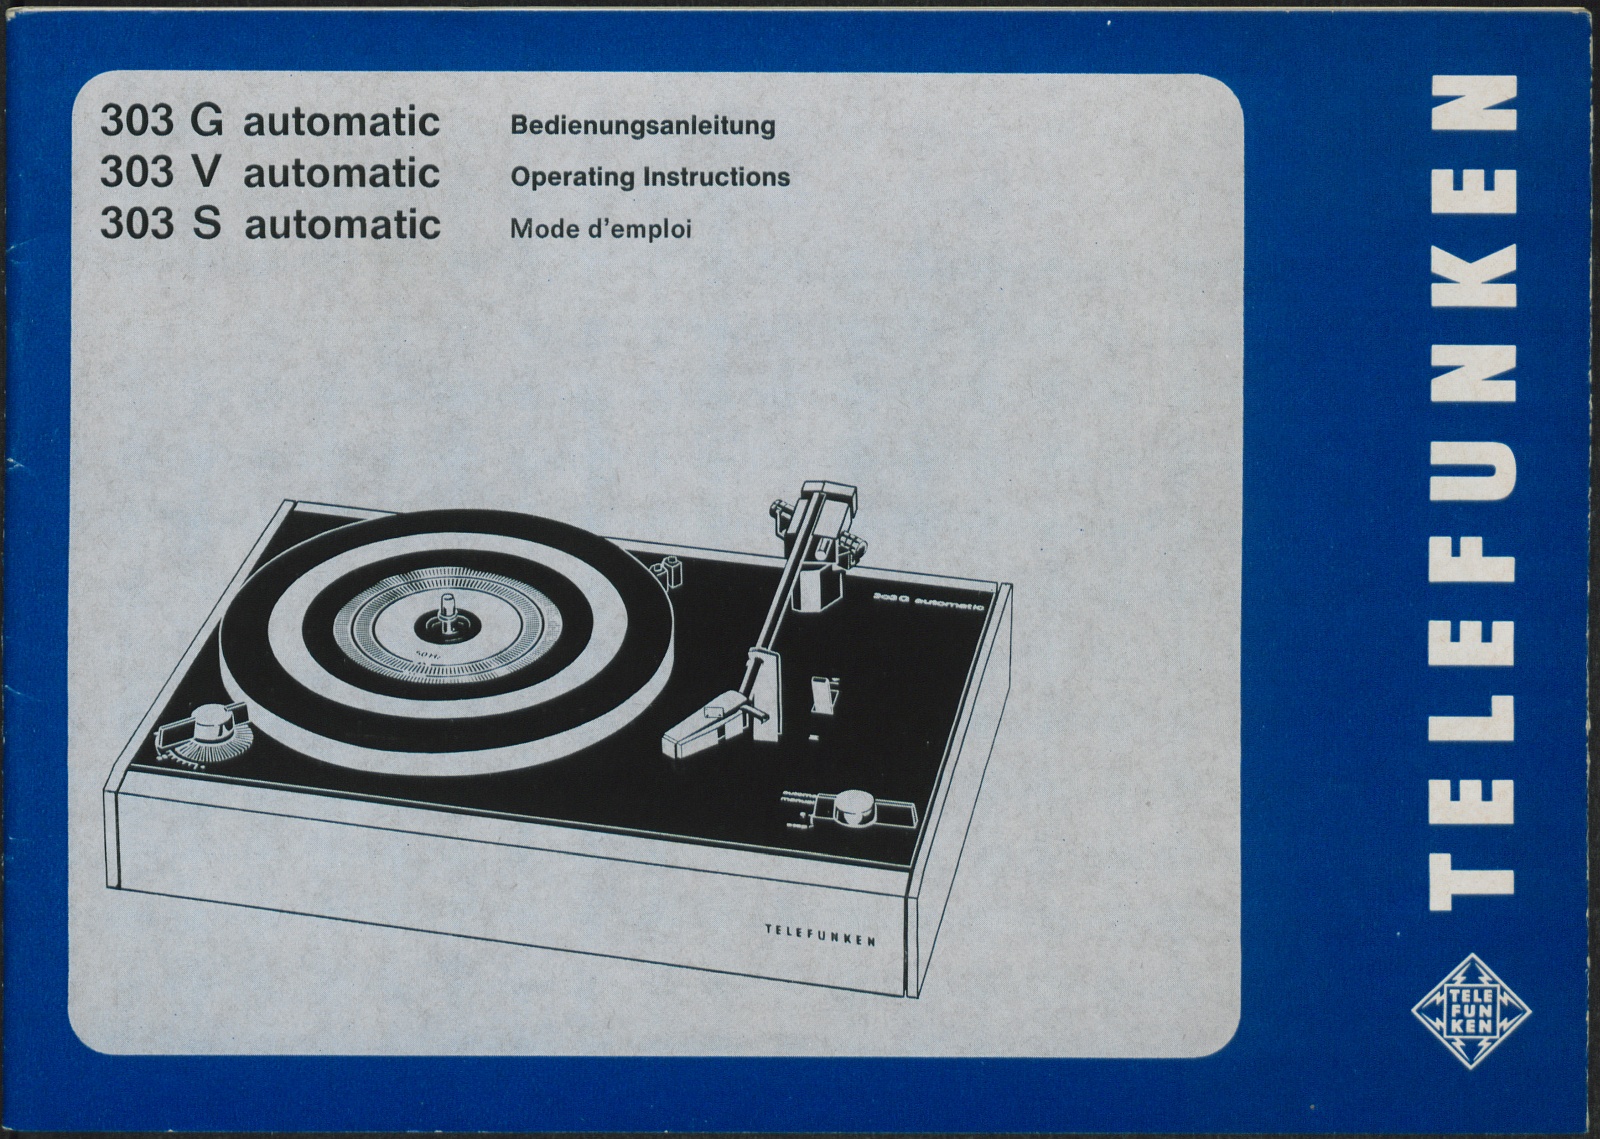 Bedienungsanleitung: Telefunken 303 G, V, S automatic (Stiftung Deutsches Technikmuseum Berlin CC0)